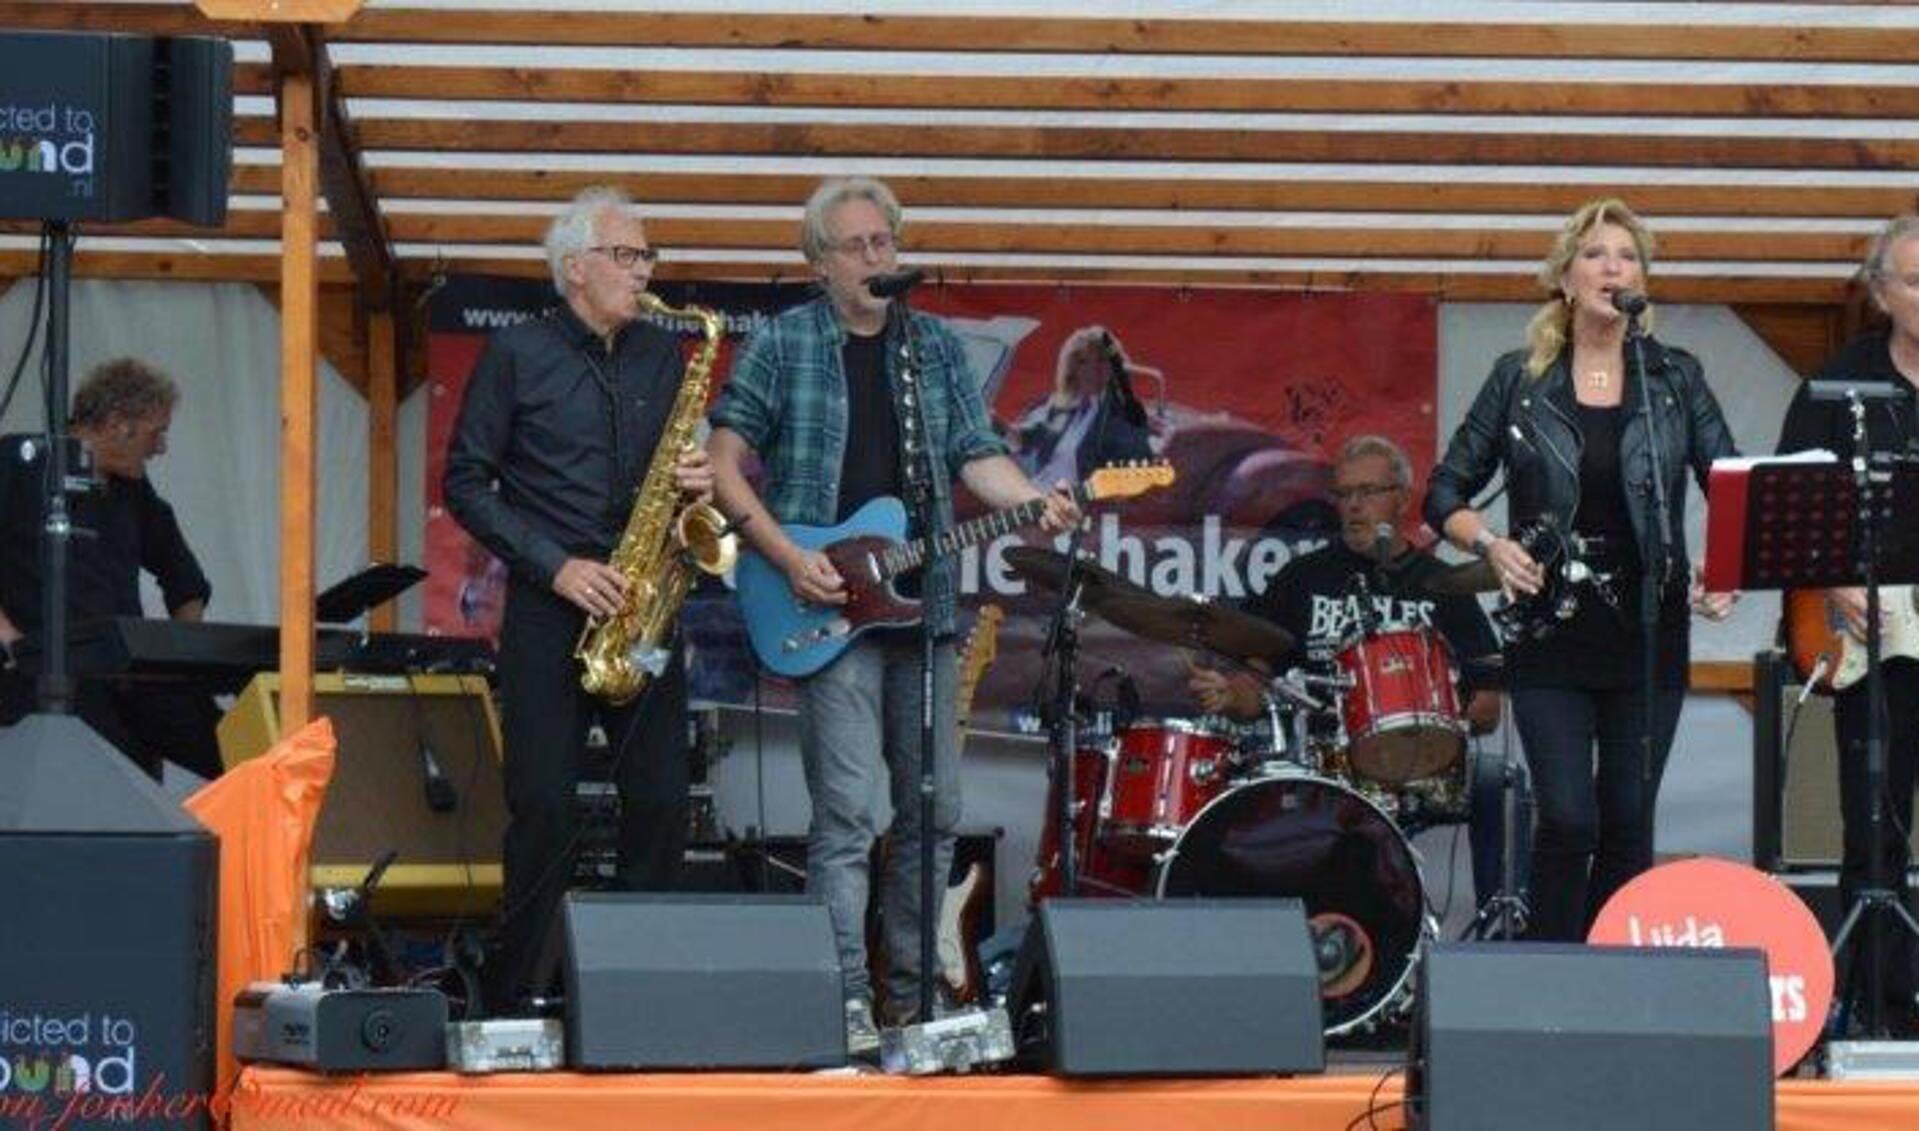 De Hoornse band Lijda and the Shakers. (Foto: aangeleverd)